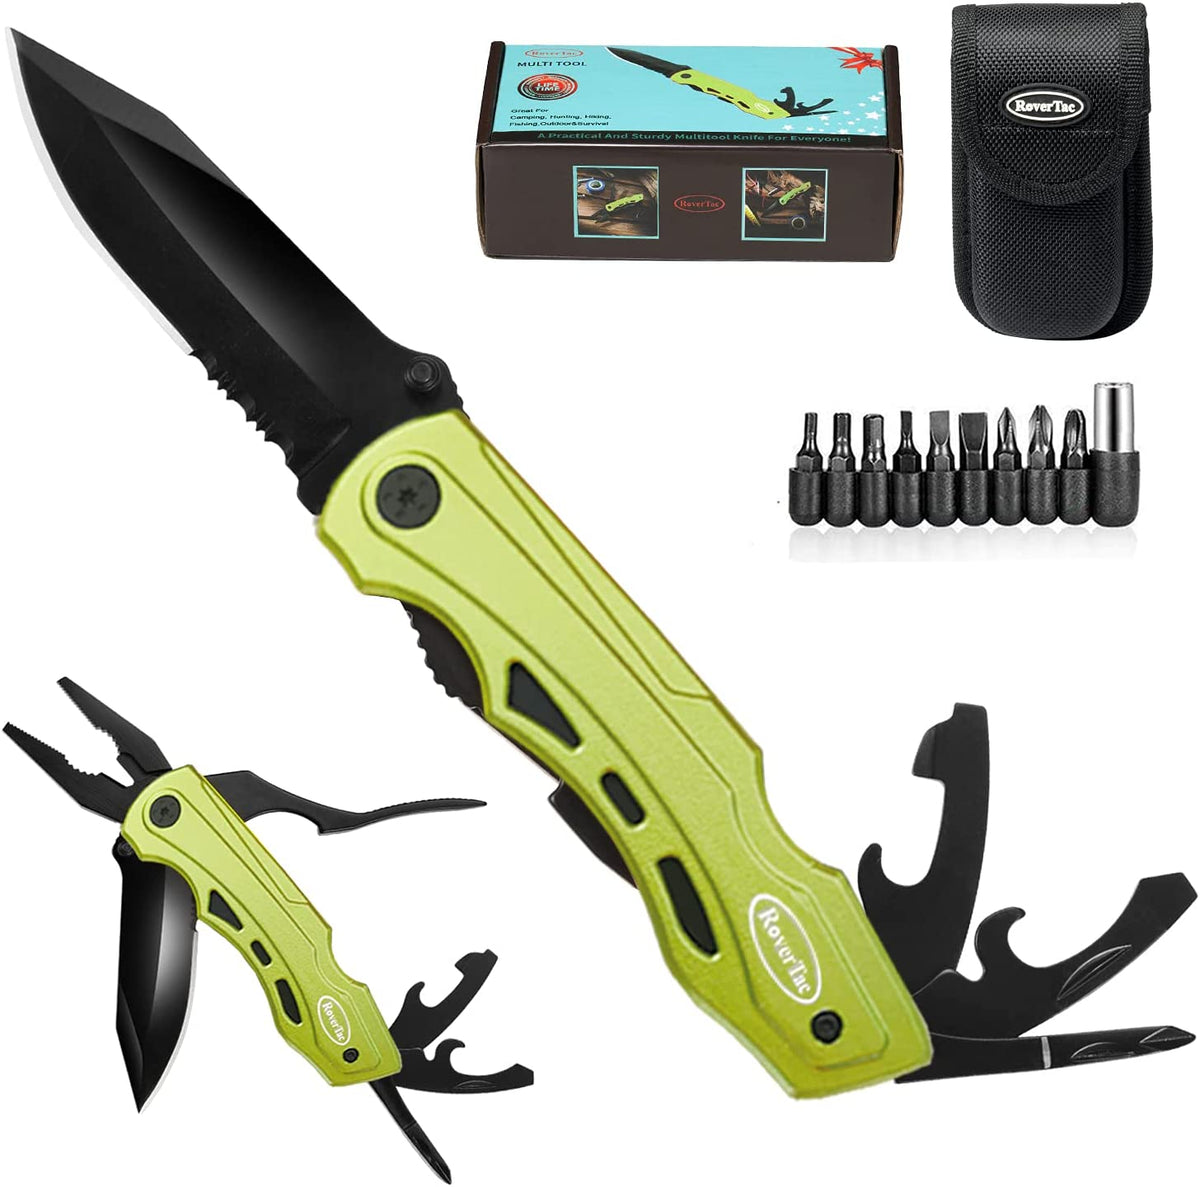 RoverTac Pocket Multitool Knife for Men's Gifts, Gifts for Men Him Hus –  RoverTac Tools & Knives